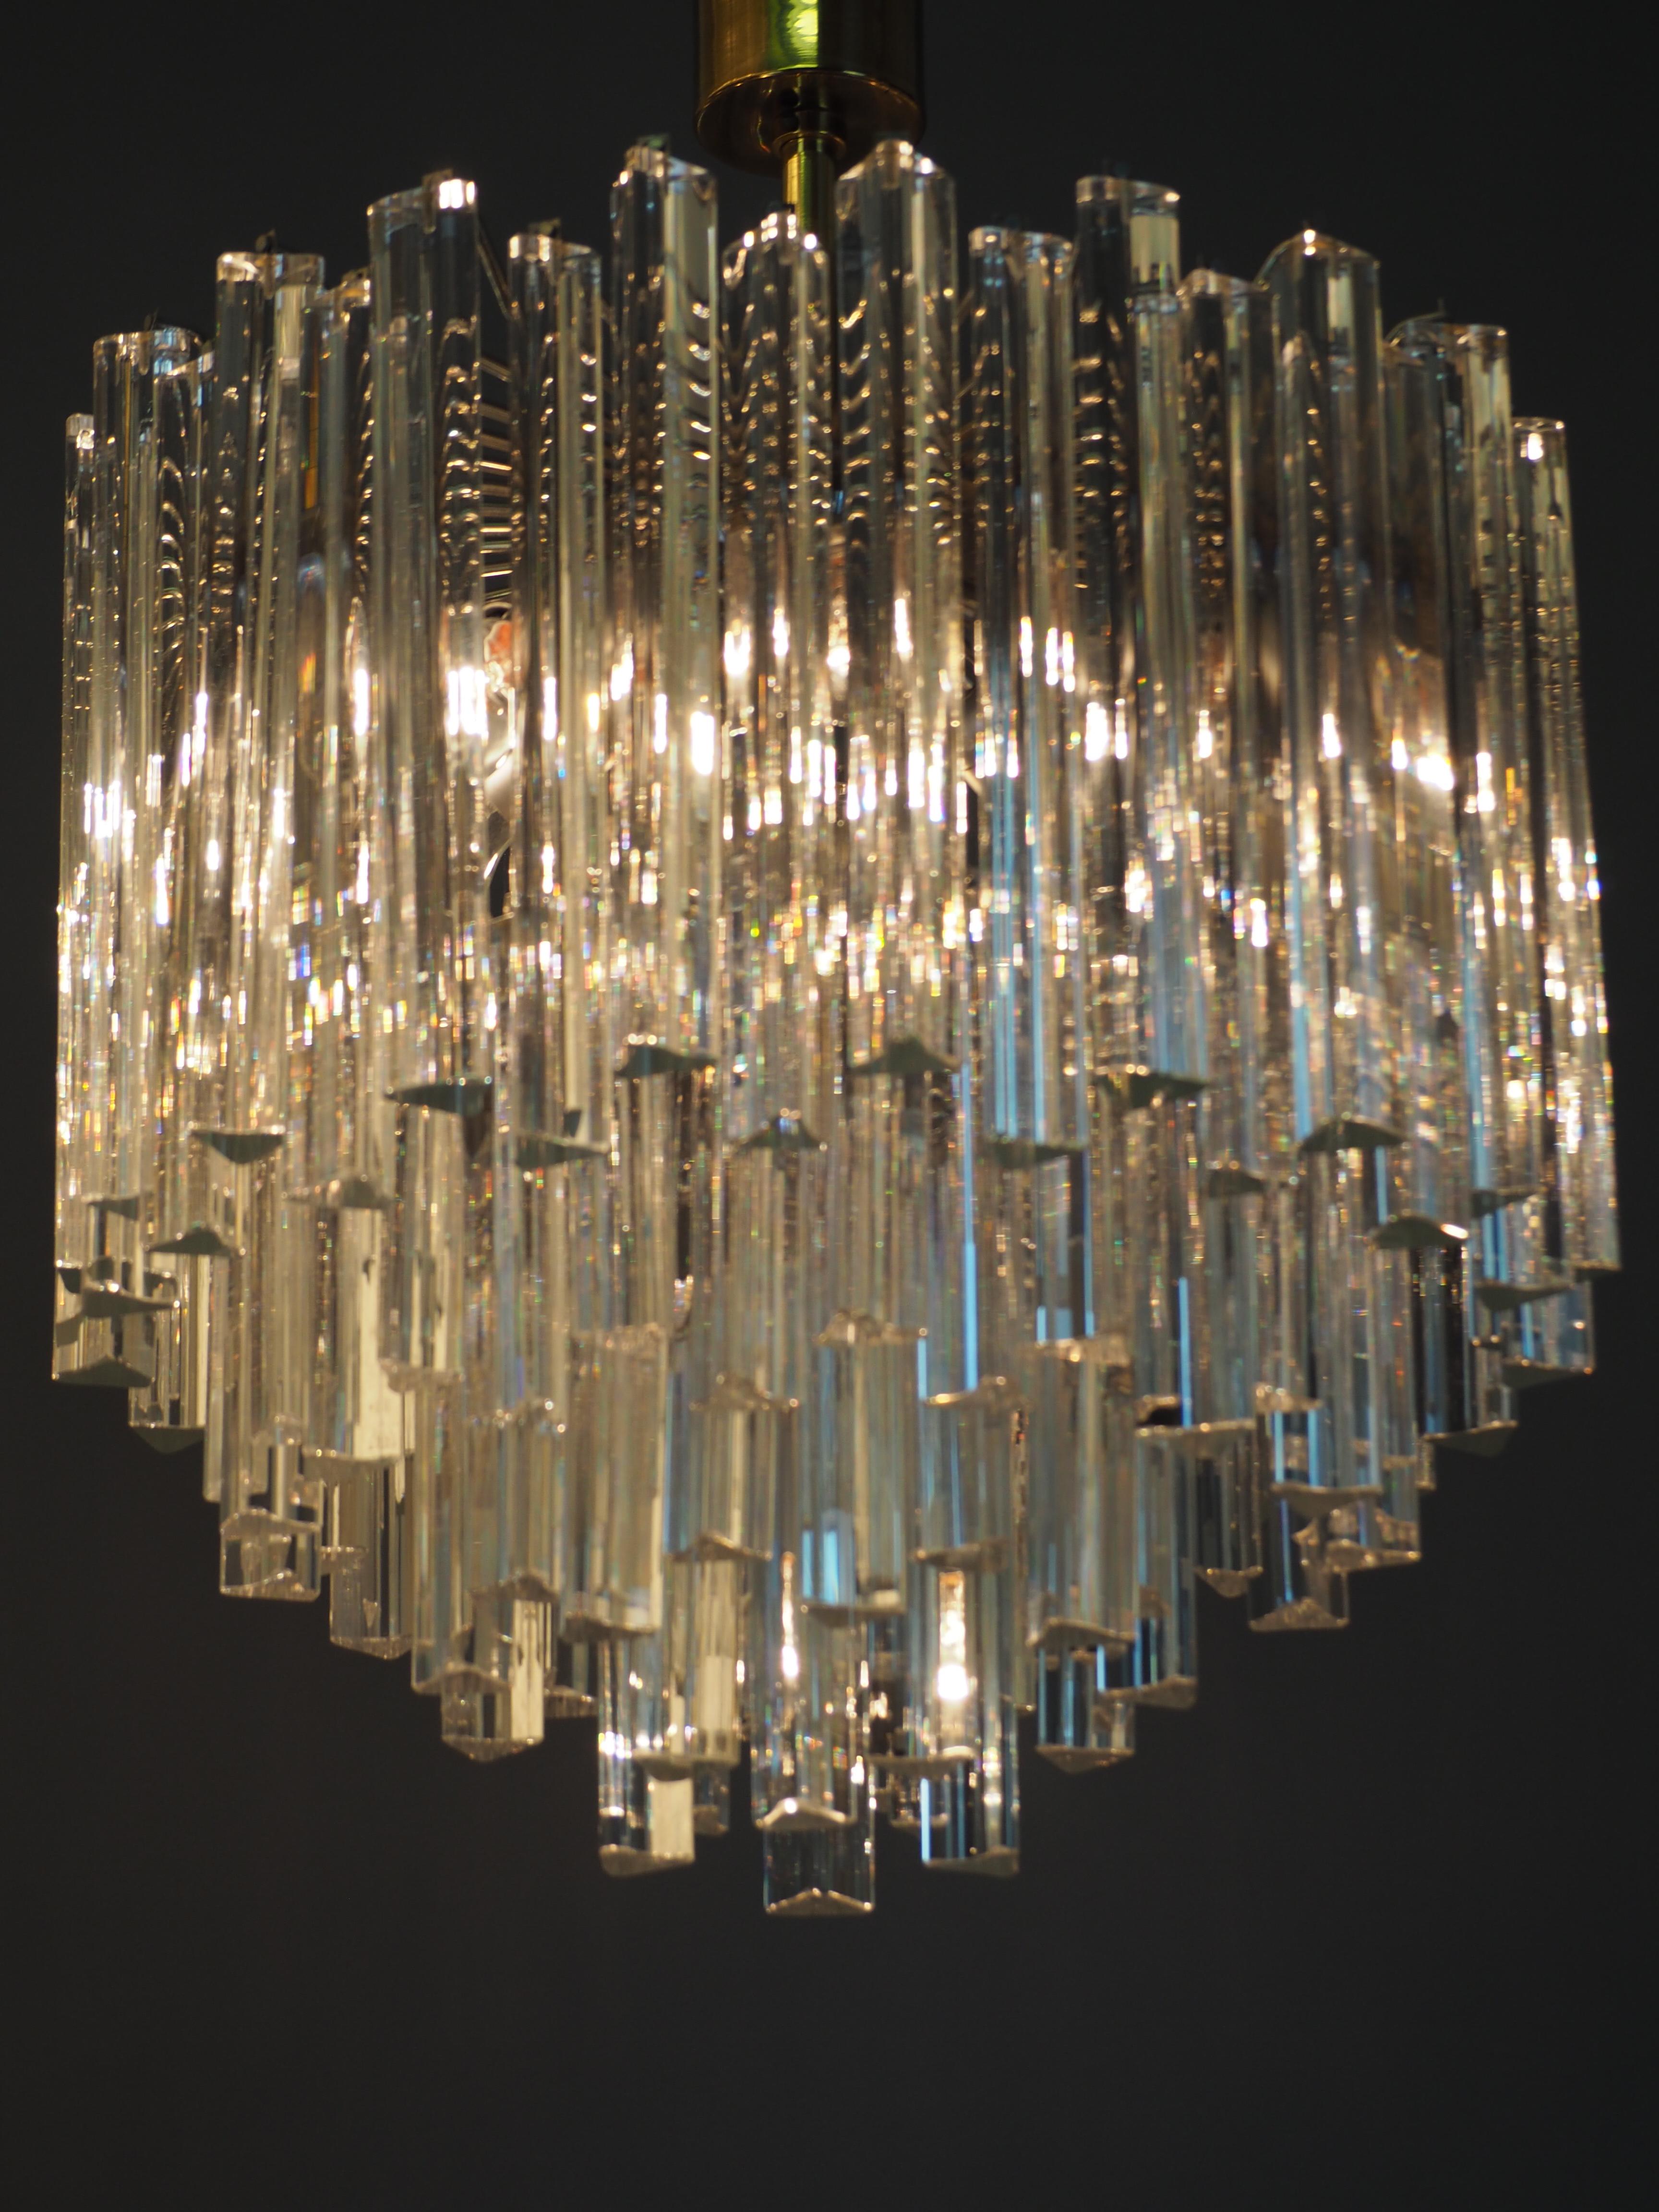 Ein sehr eleganter und großer vierstöckiger Muranokronleuchter, der Venini zugeschrieben wird.
Diese Leuchte besteht aus 96 Muranogläsern 